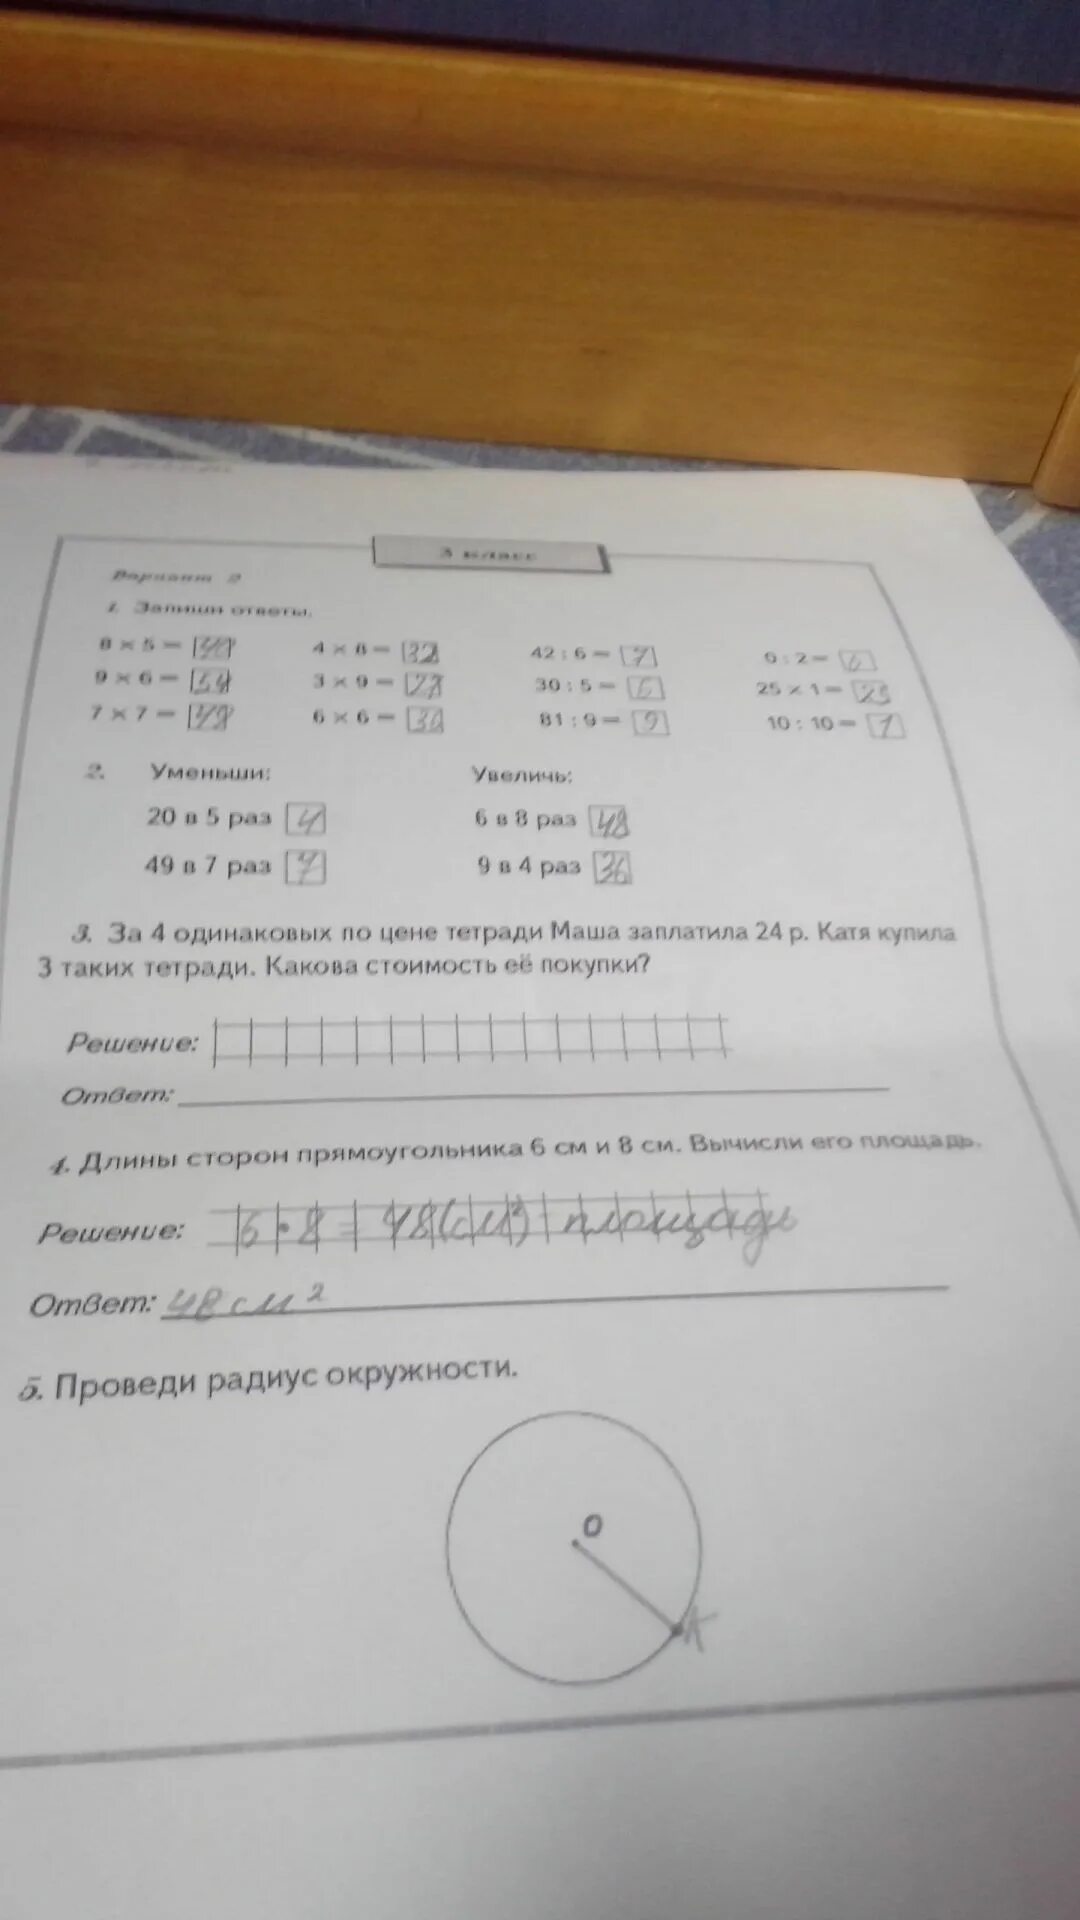 Маша за 3 тетради заплатила. За одинаковые тетради заплатили 24 рубля. За 6 одинаковых тетрадей заплатили 18 р а за 4. За 4 одинаковых по цене тетради Маша заплатила 24 задачи по математике.